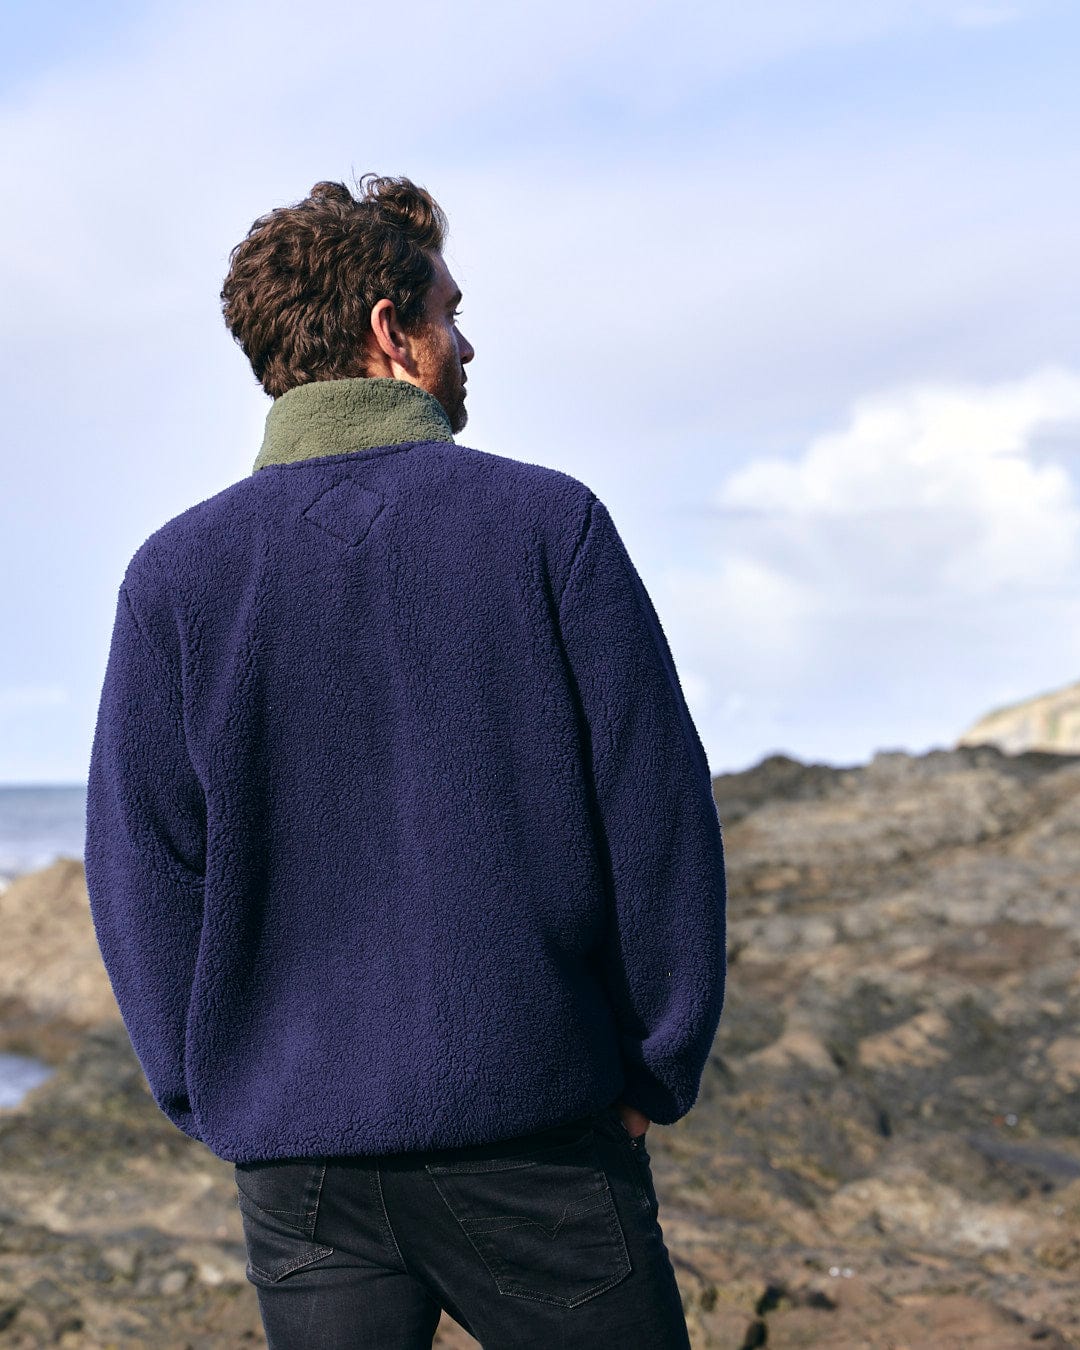 A man wearing a blue sweater, Saltrock Odin - Mens Zip Thru Fleece, standing on a rocky beach.